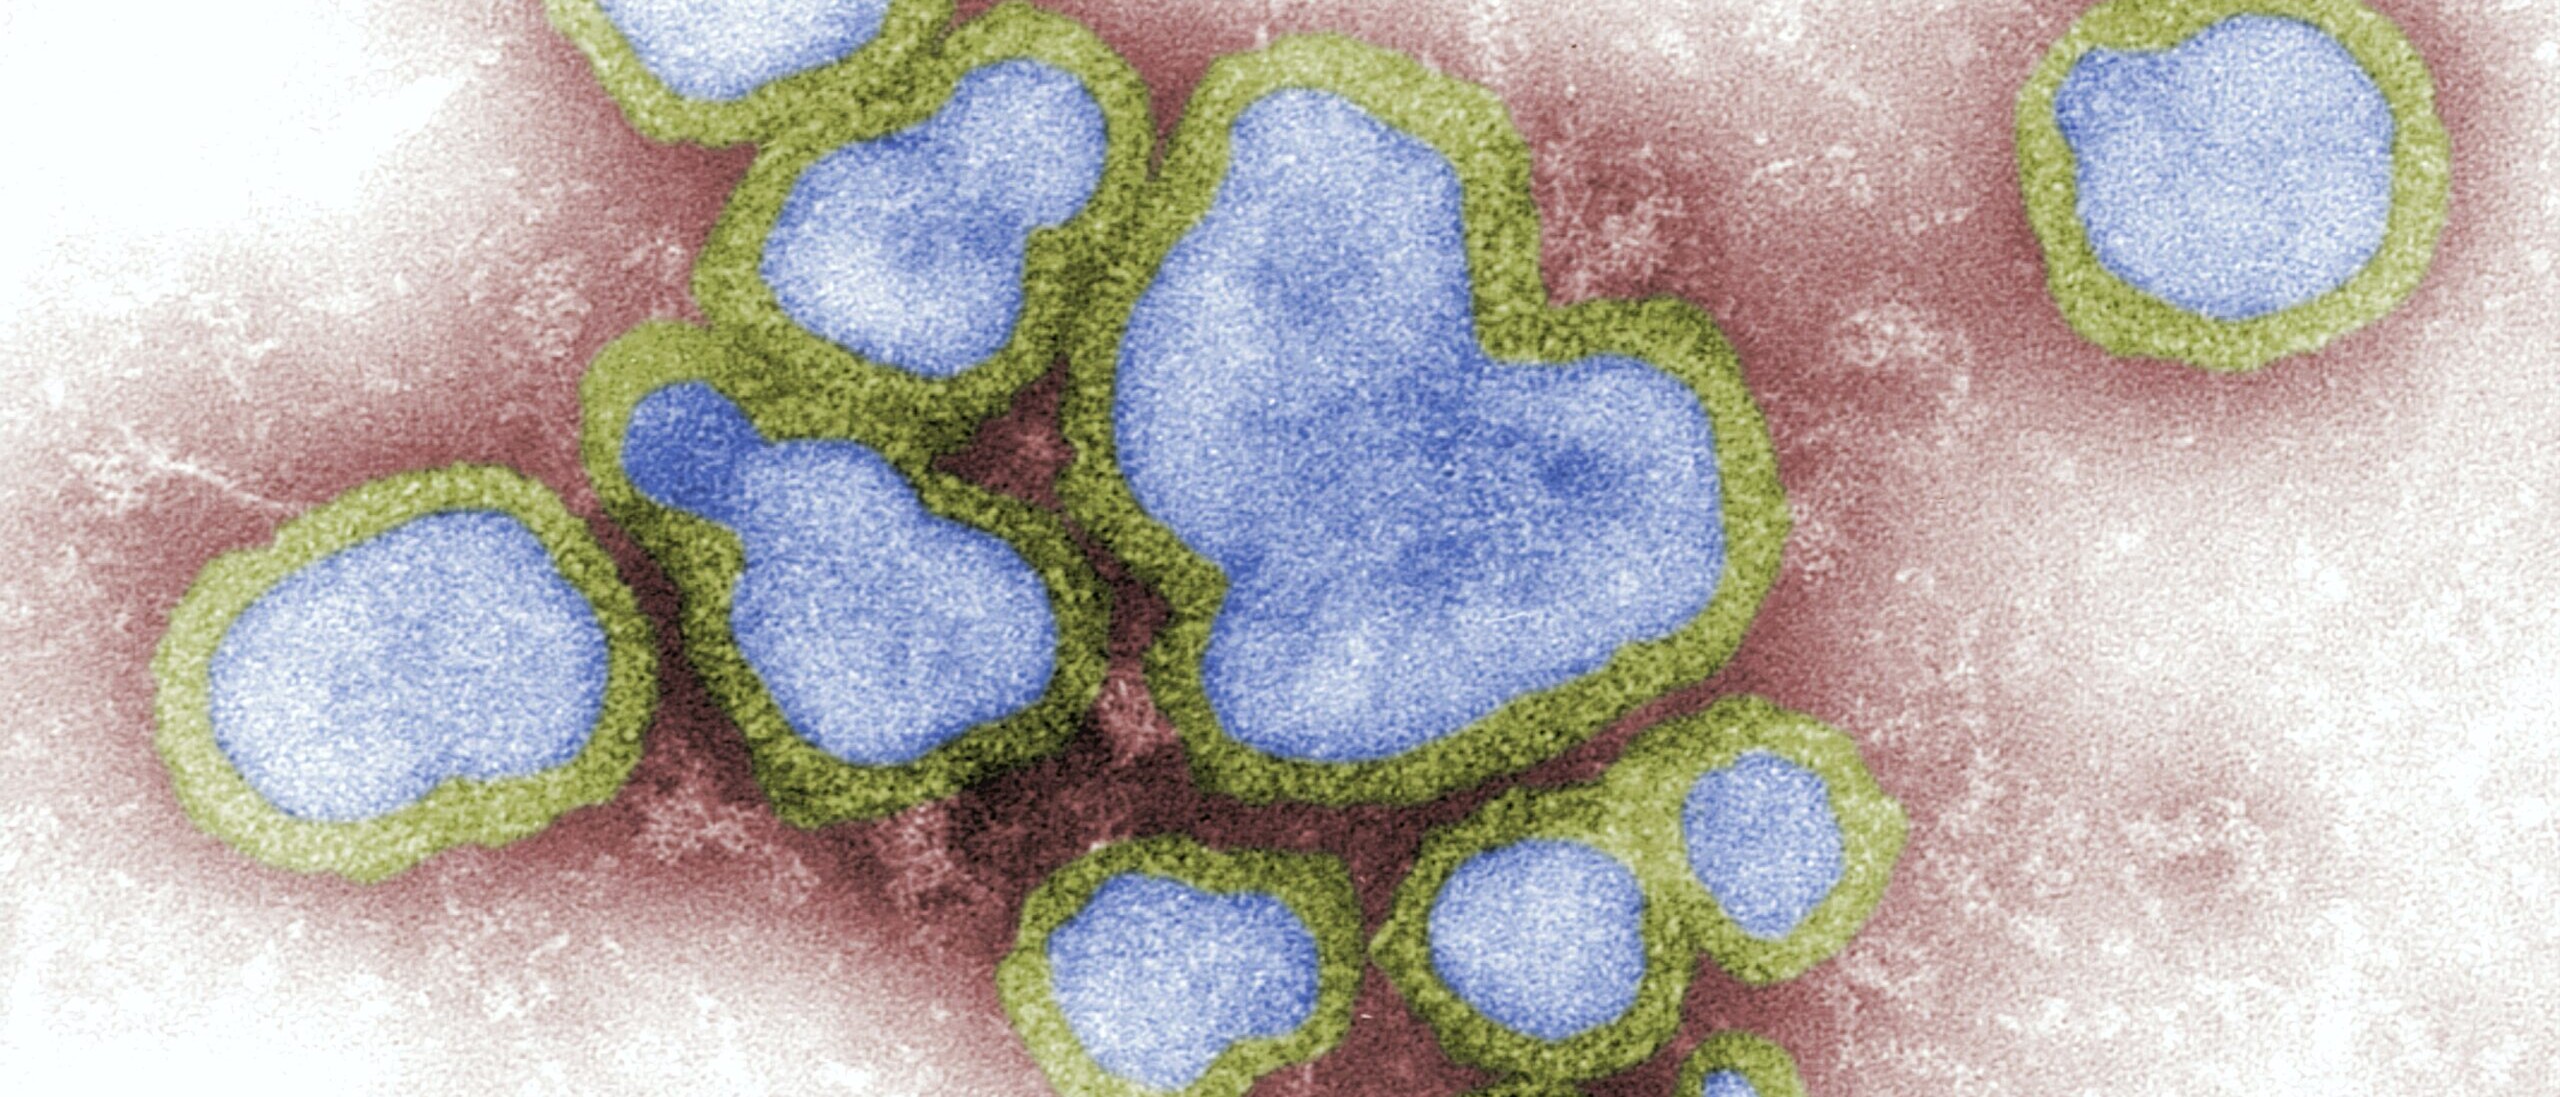 Virus in blau mit gelber Umrandung auf rotem Hintergrund.